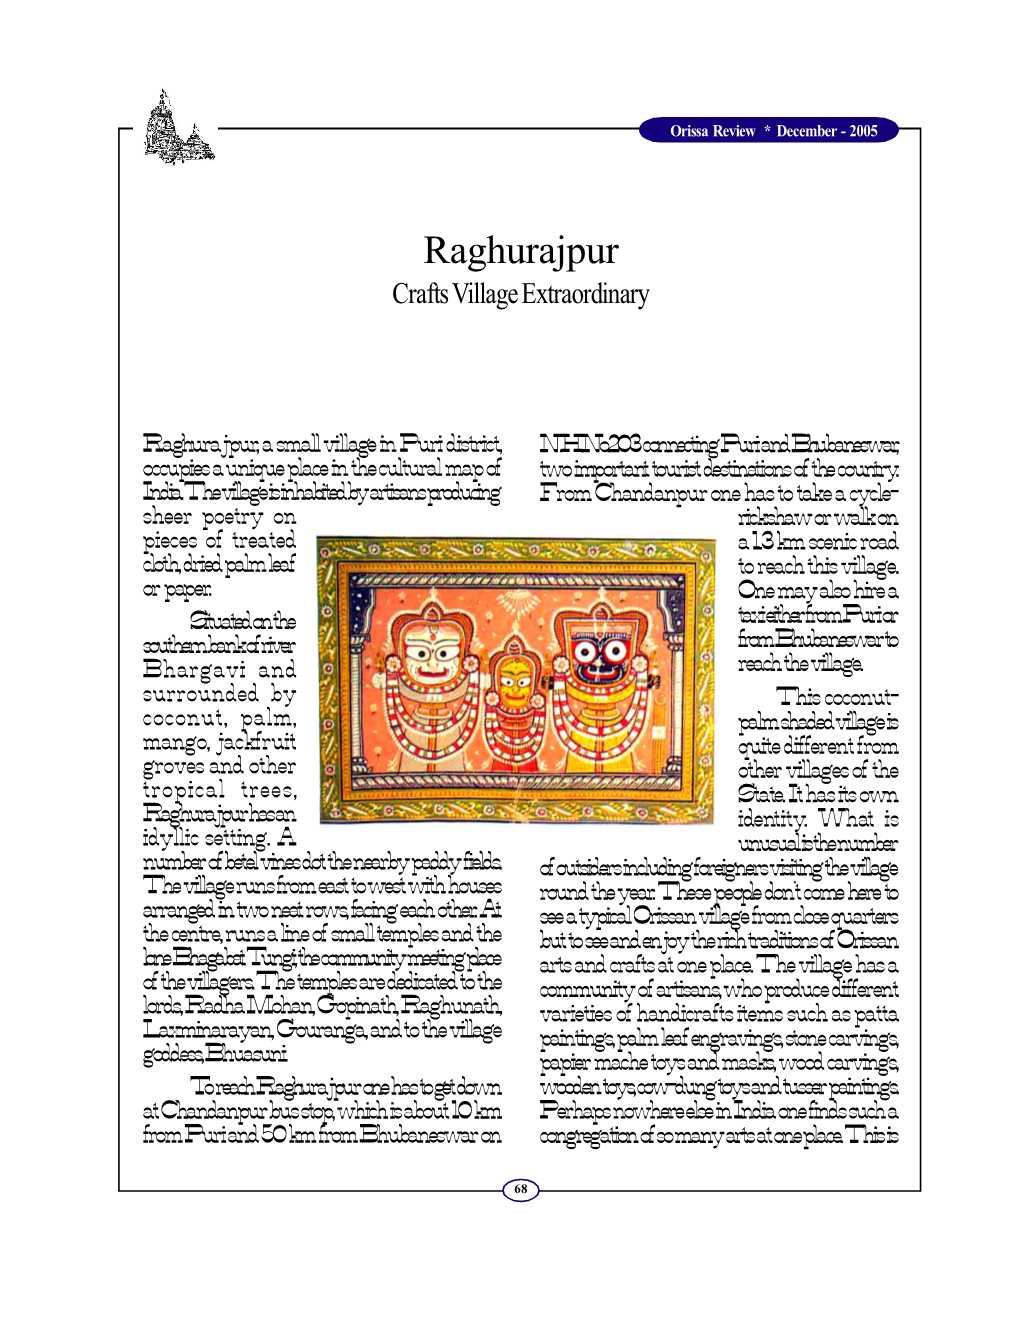 Raghurajpur: Crafts Village Extraordinary